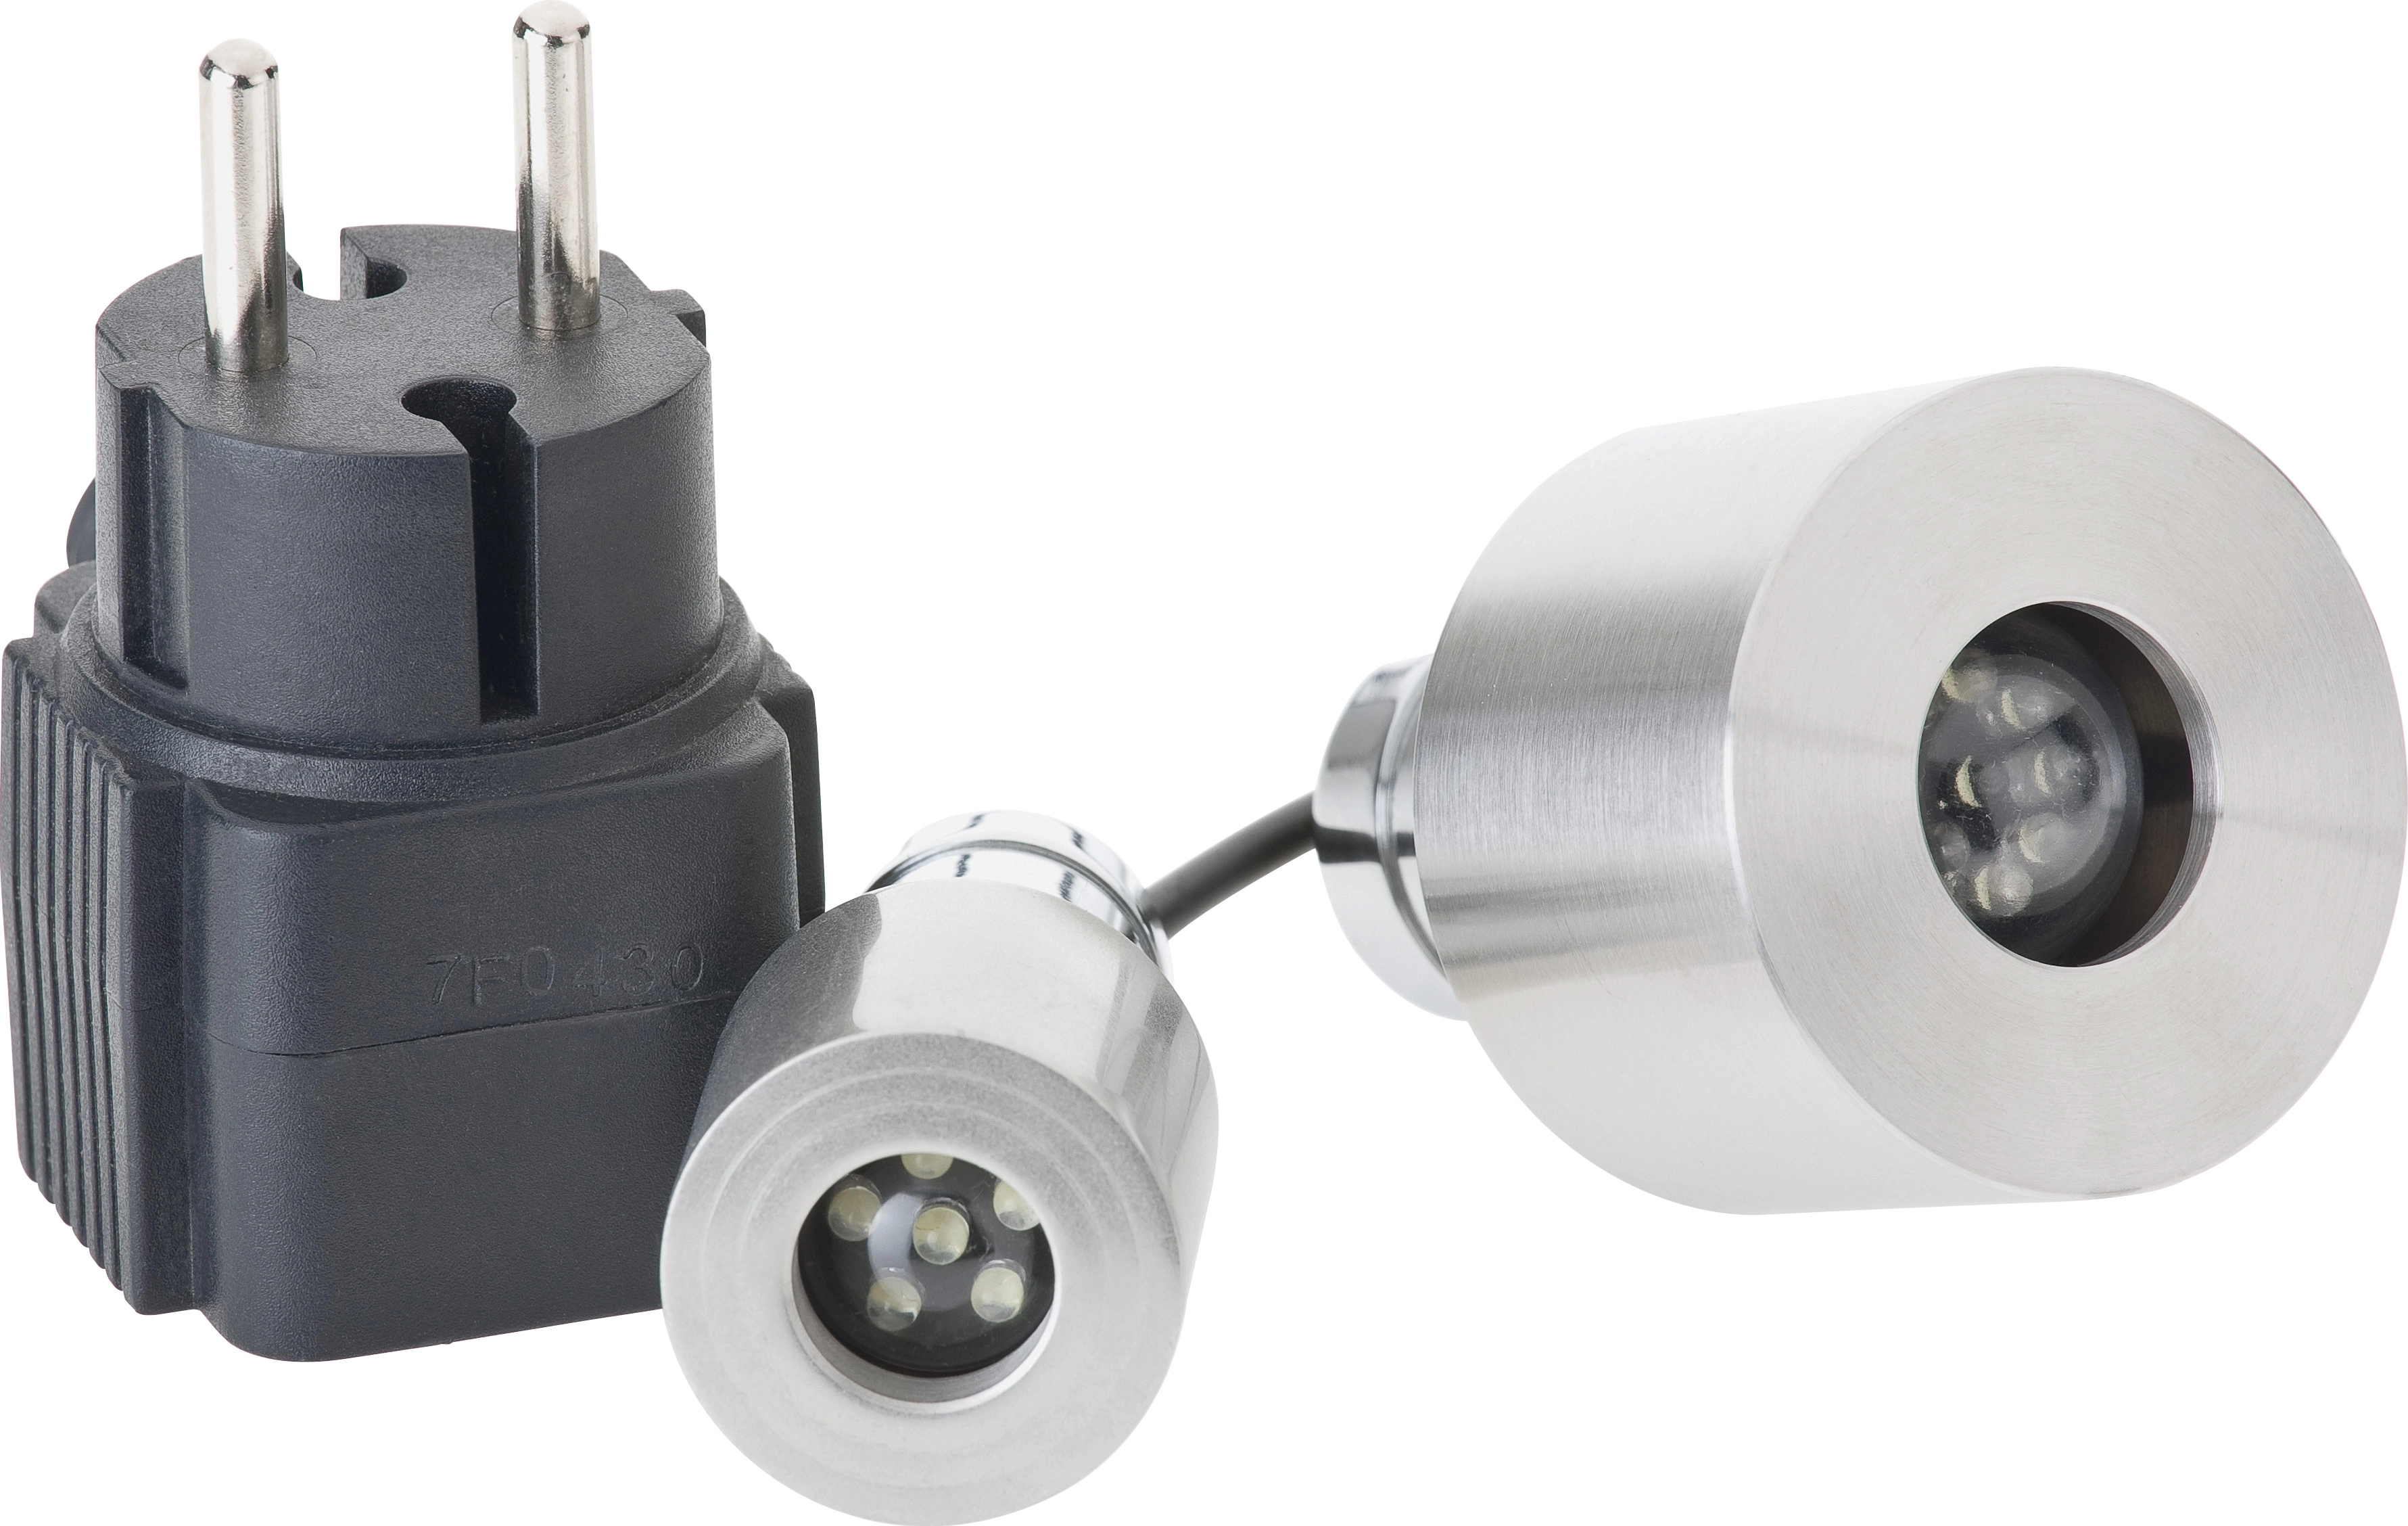 Oase LED-Scheinwerfer LunaLed 6s kaufen bei OBI